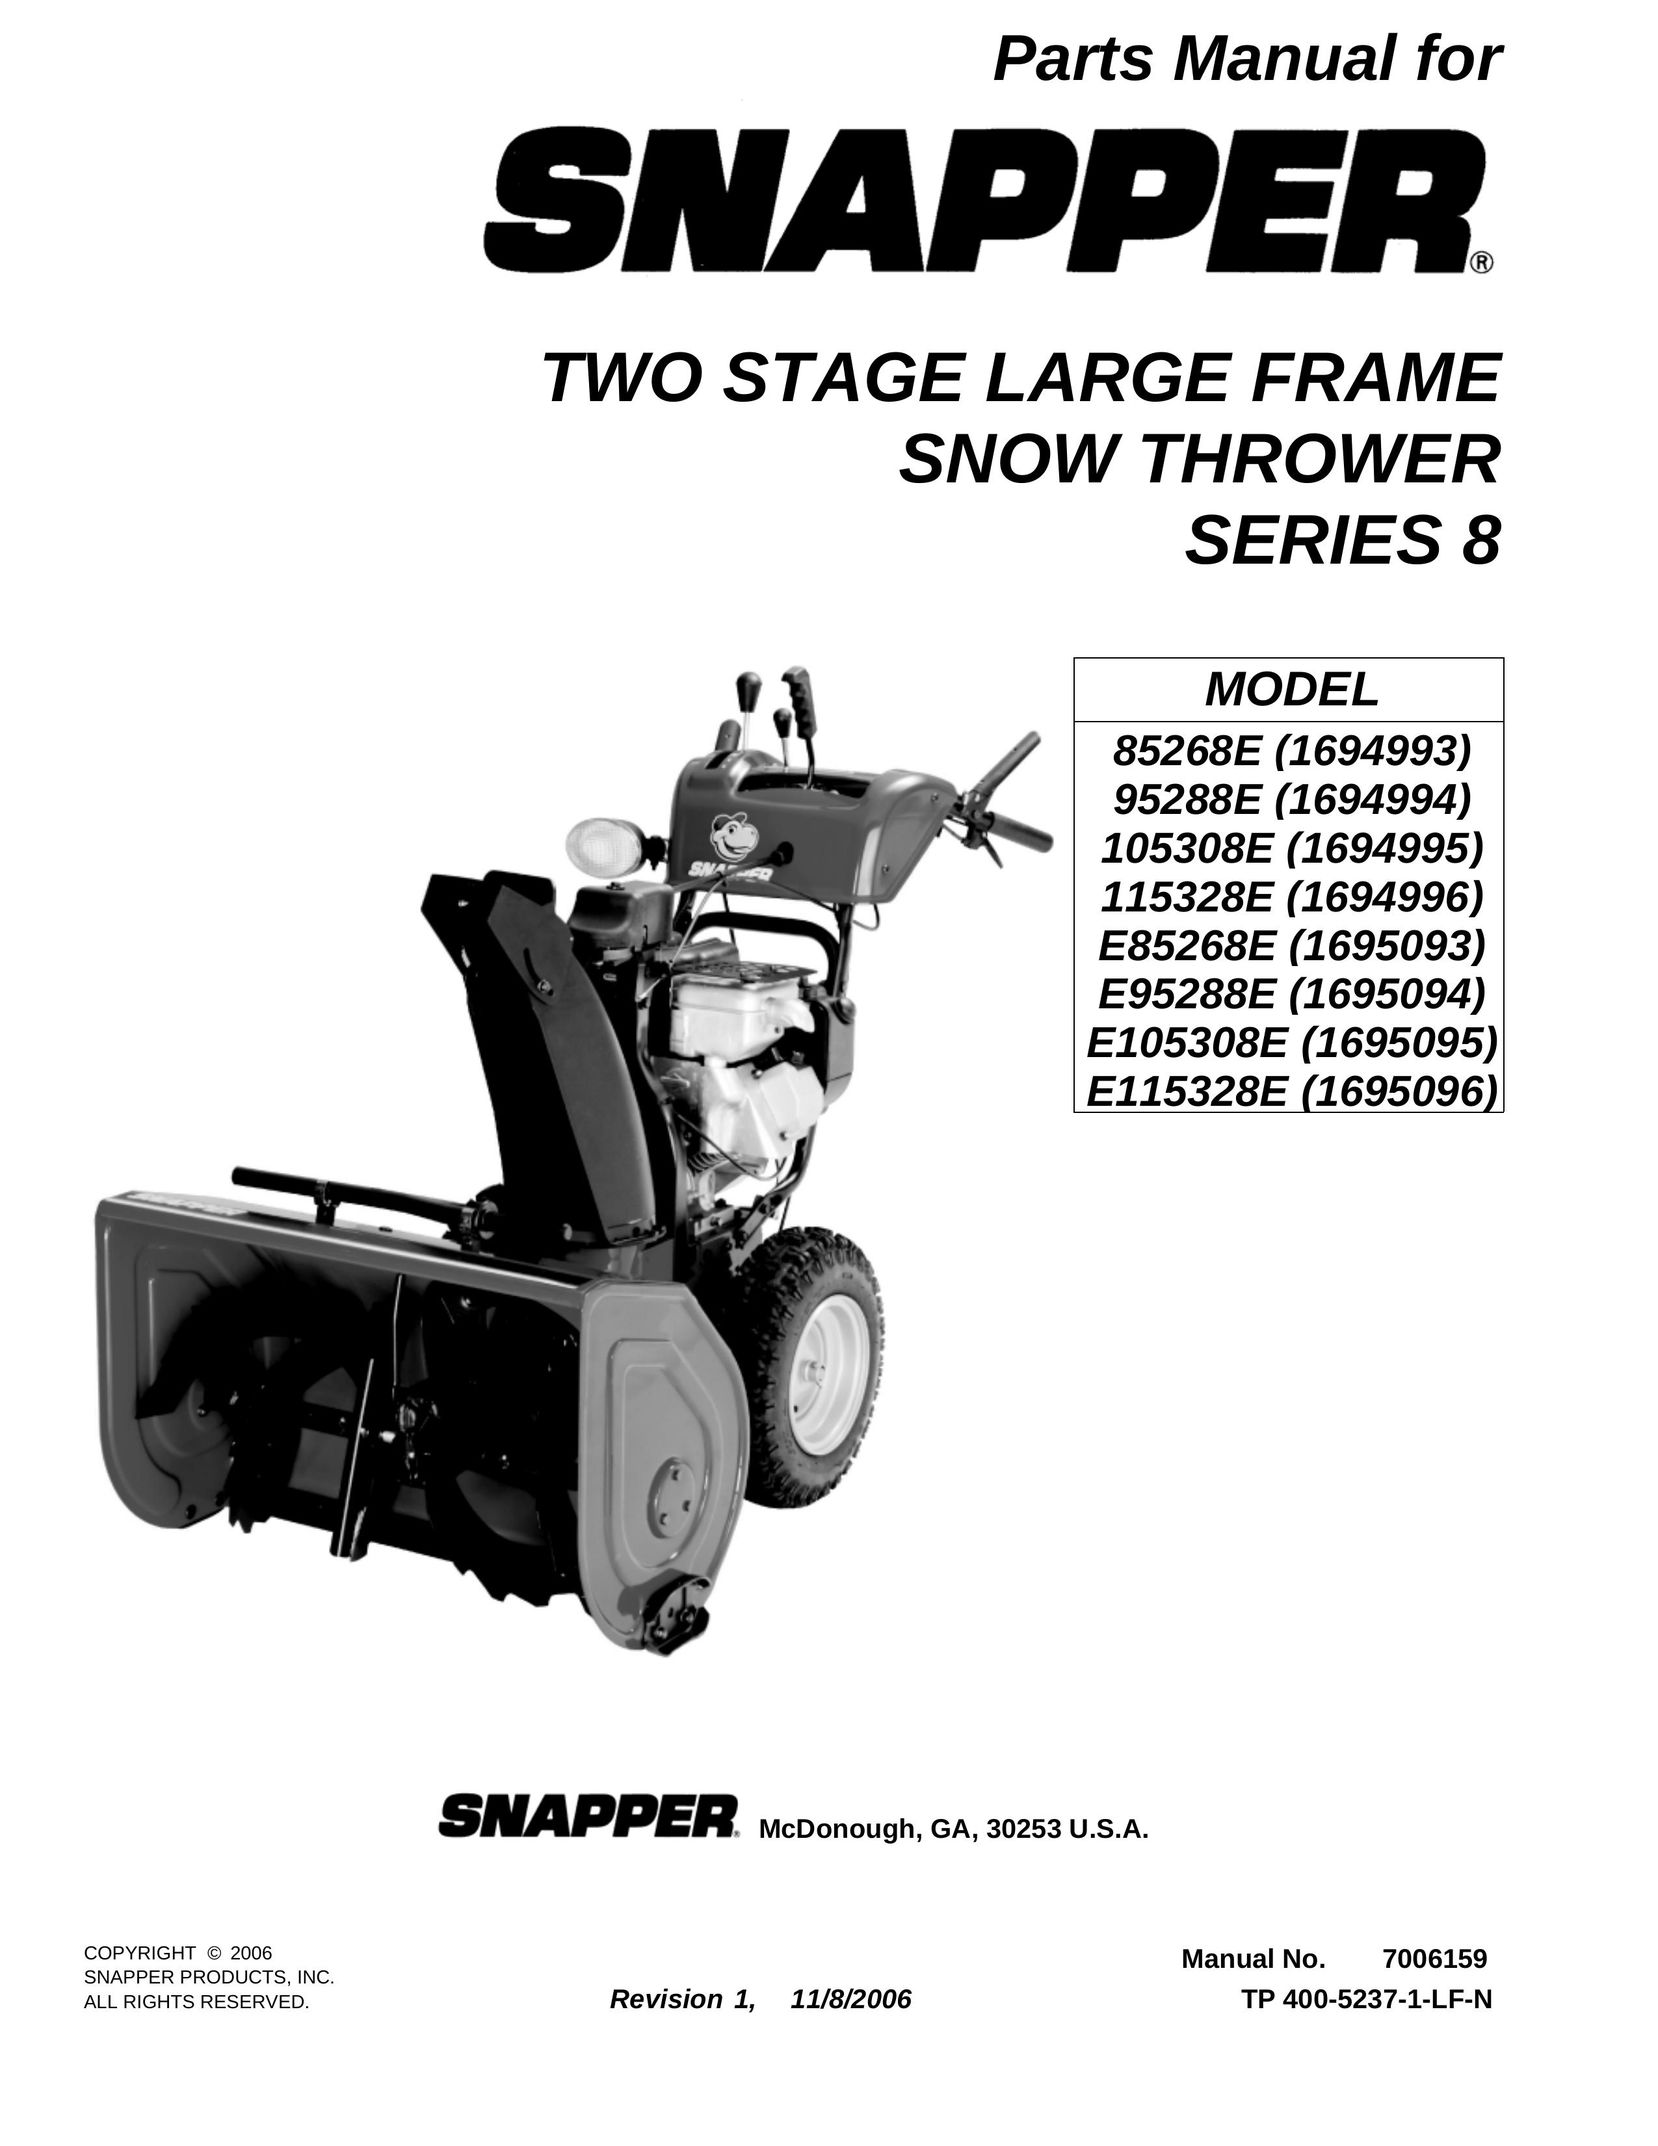 Snapper E105308E VCR User Manual